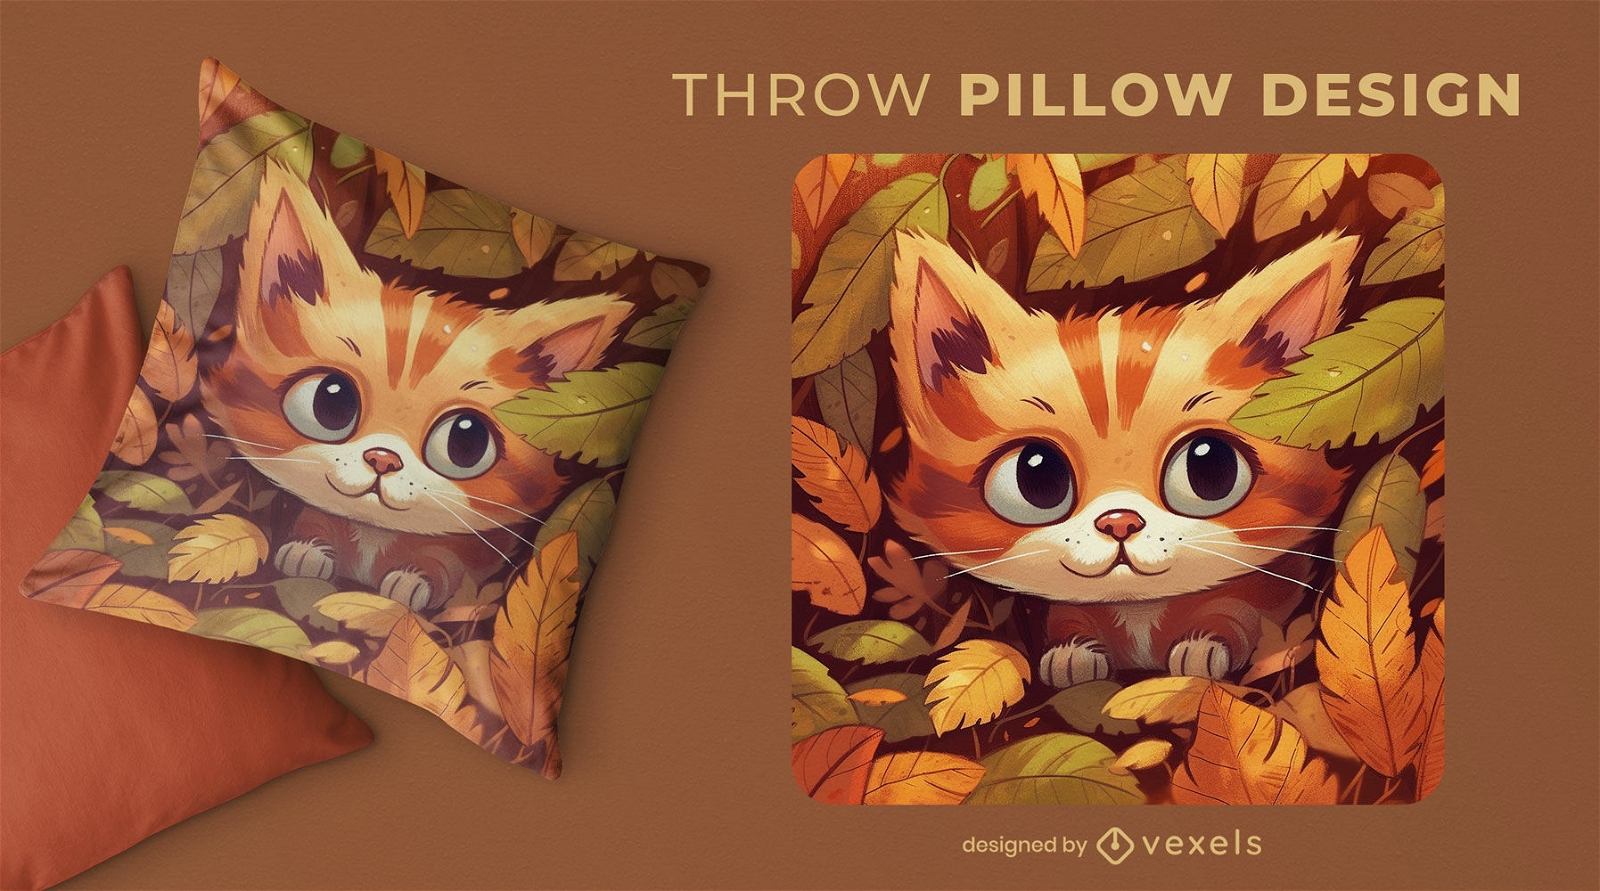 Diseño de almohada de gato en hojas.